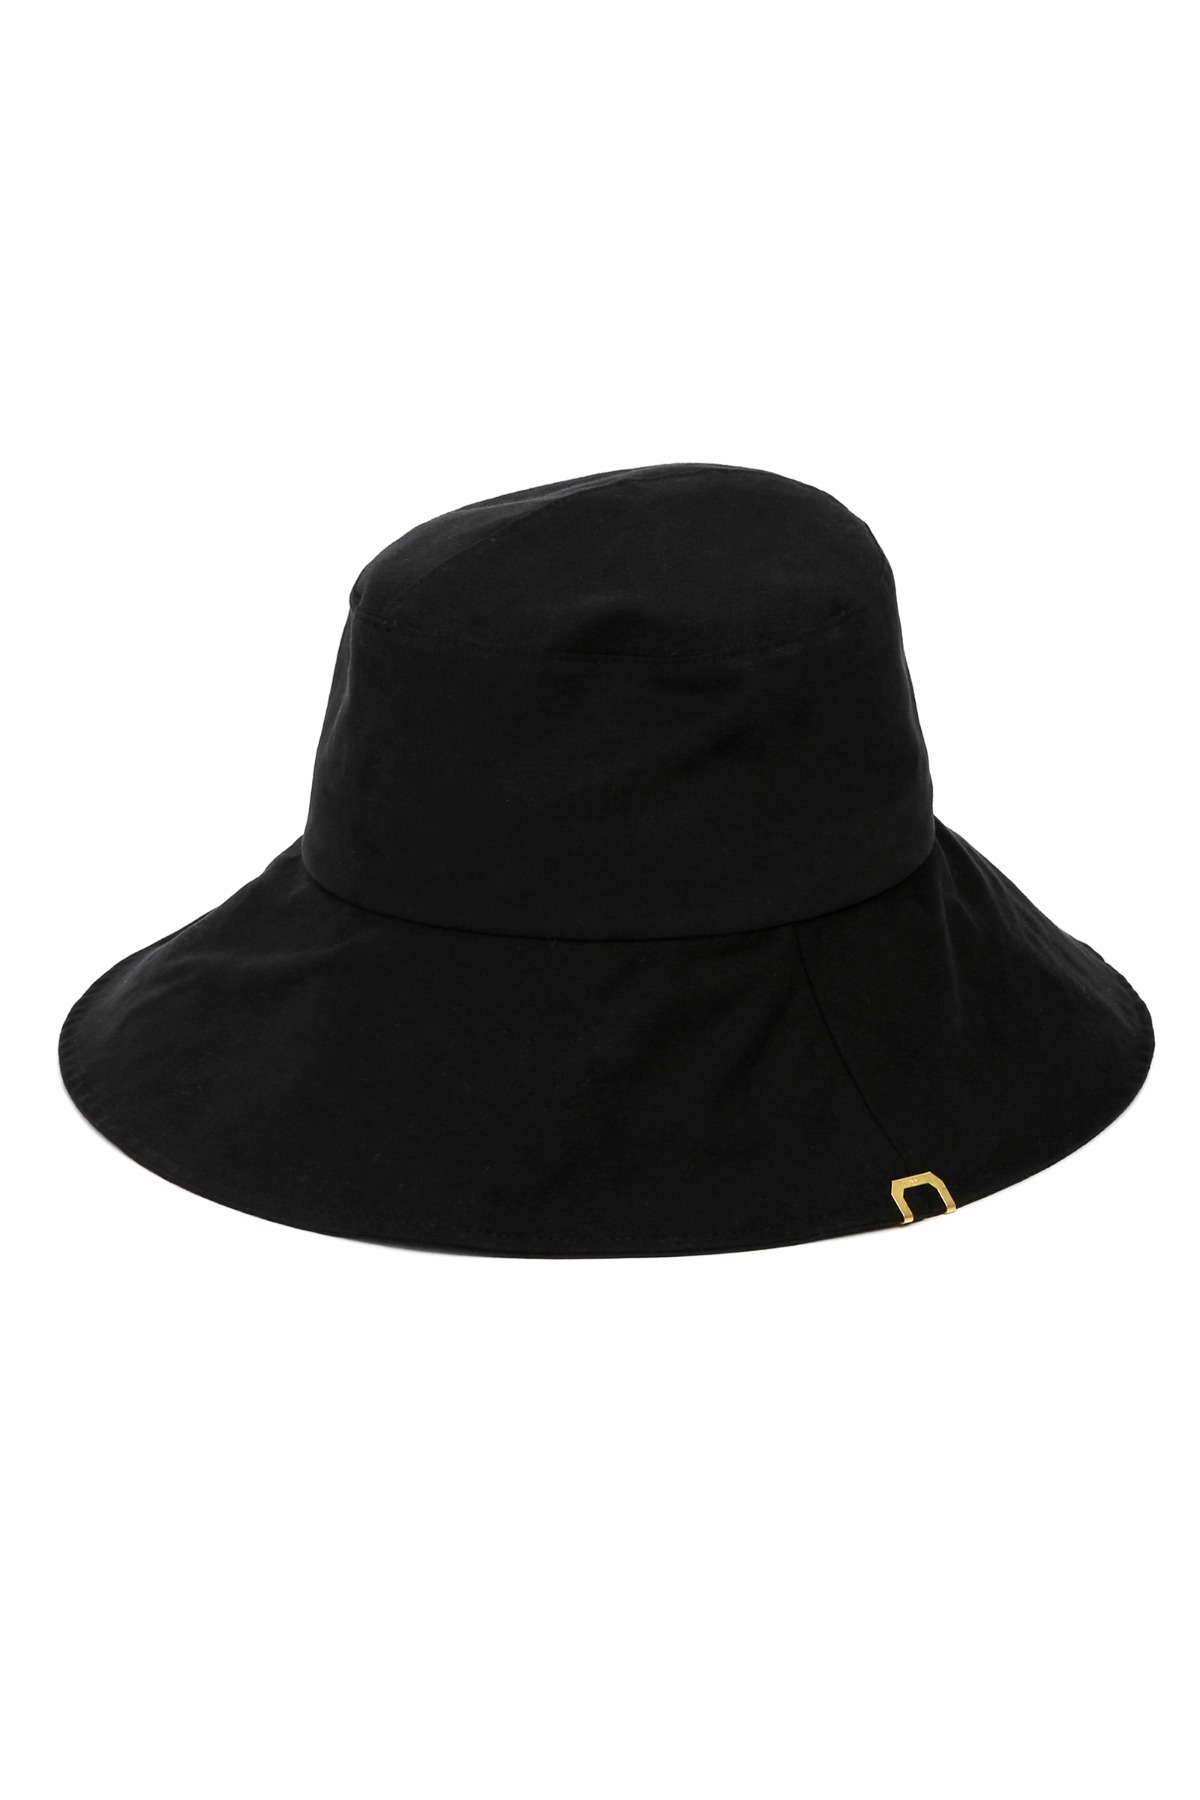 UMBRELLA HAT / BIO / BRUSH BLACK